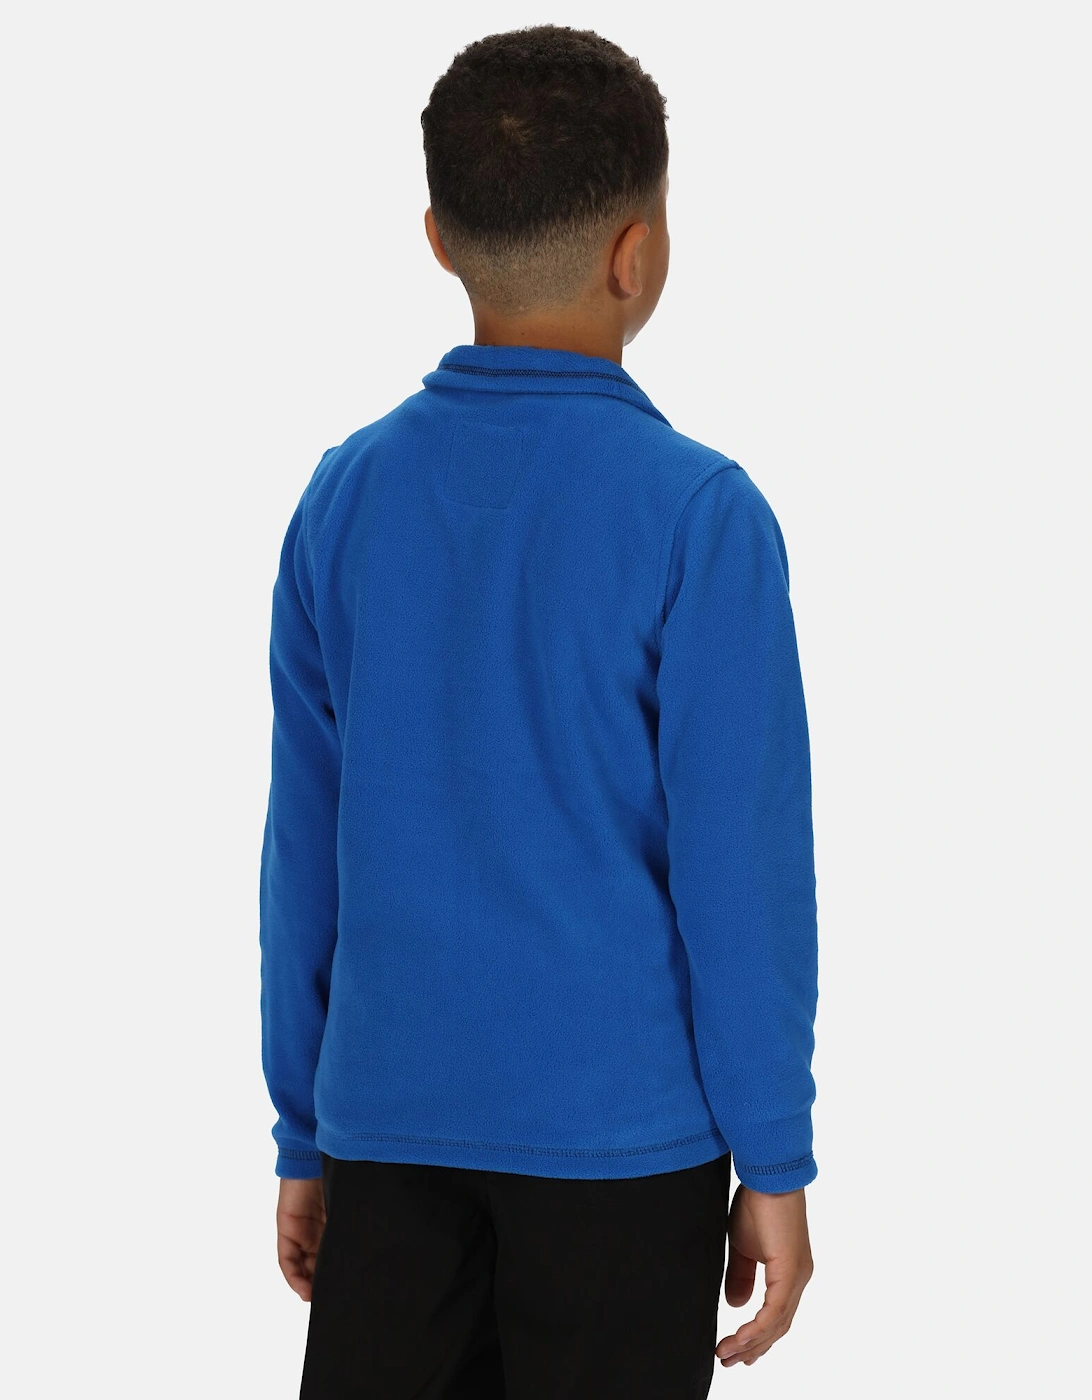 Great Outdoors Childrens/Kids King II Lightweight Full Zip Fleece Jacket